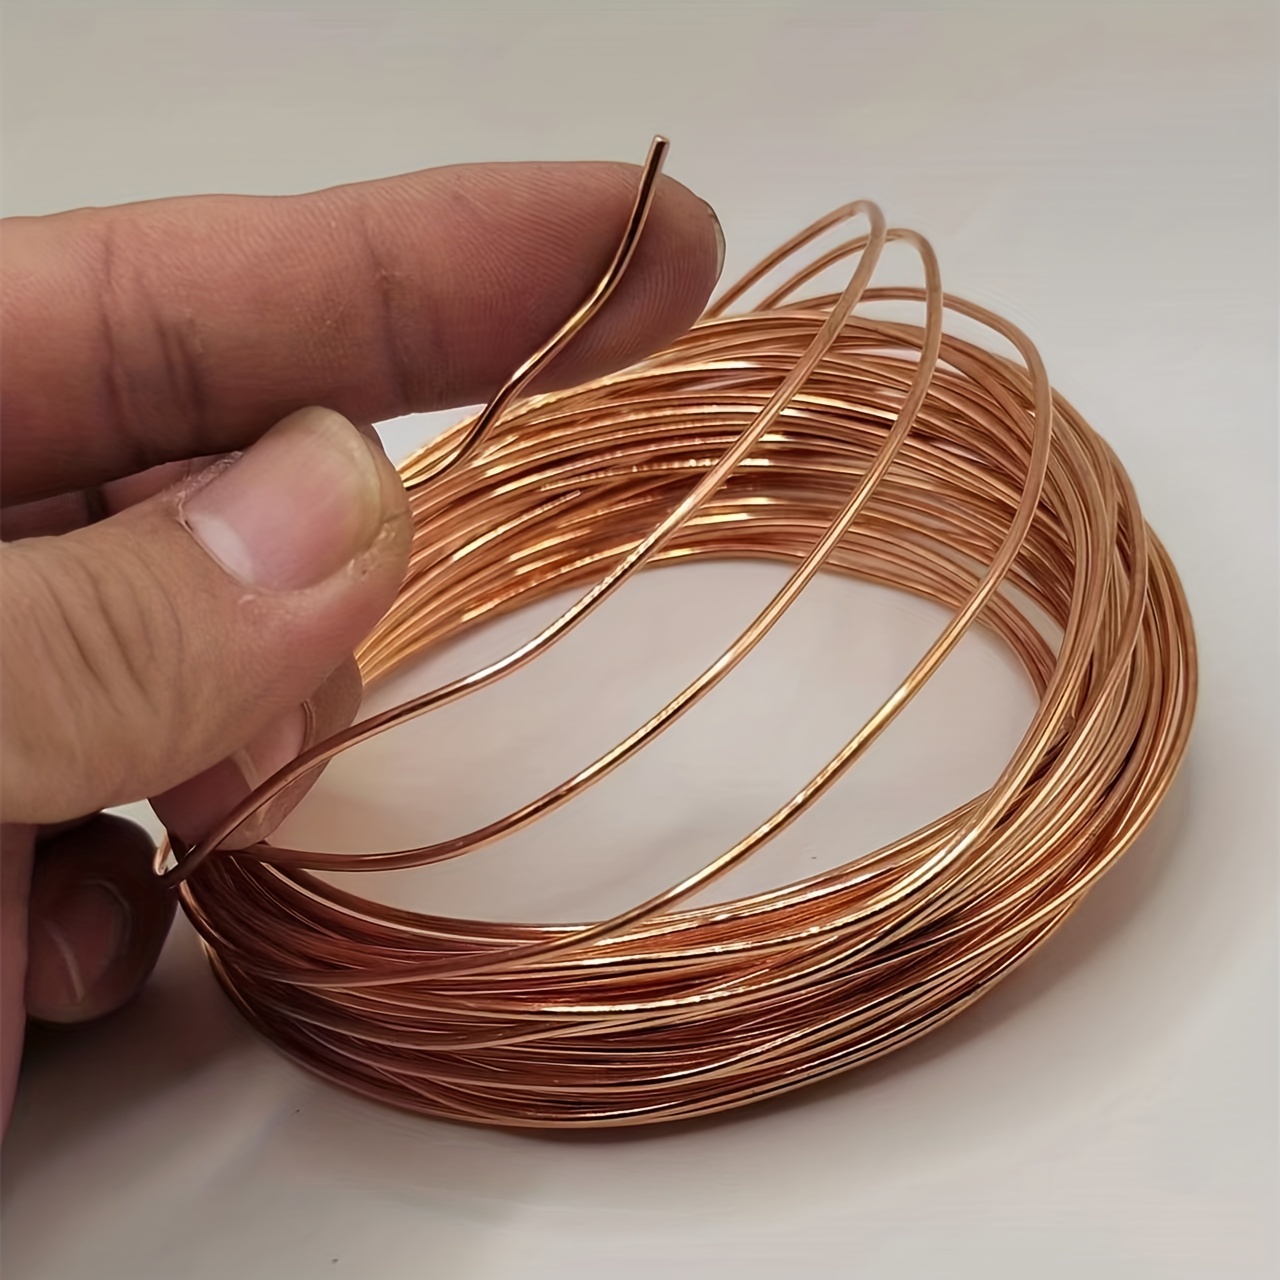 

13th Bare Copper Wire 2.2mm Bare Copper Wire Pure Copper Wire Length 32 Feet Solid Bare Copper Wire Round Shape 10 Meters Per Roll Soft Wire